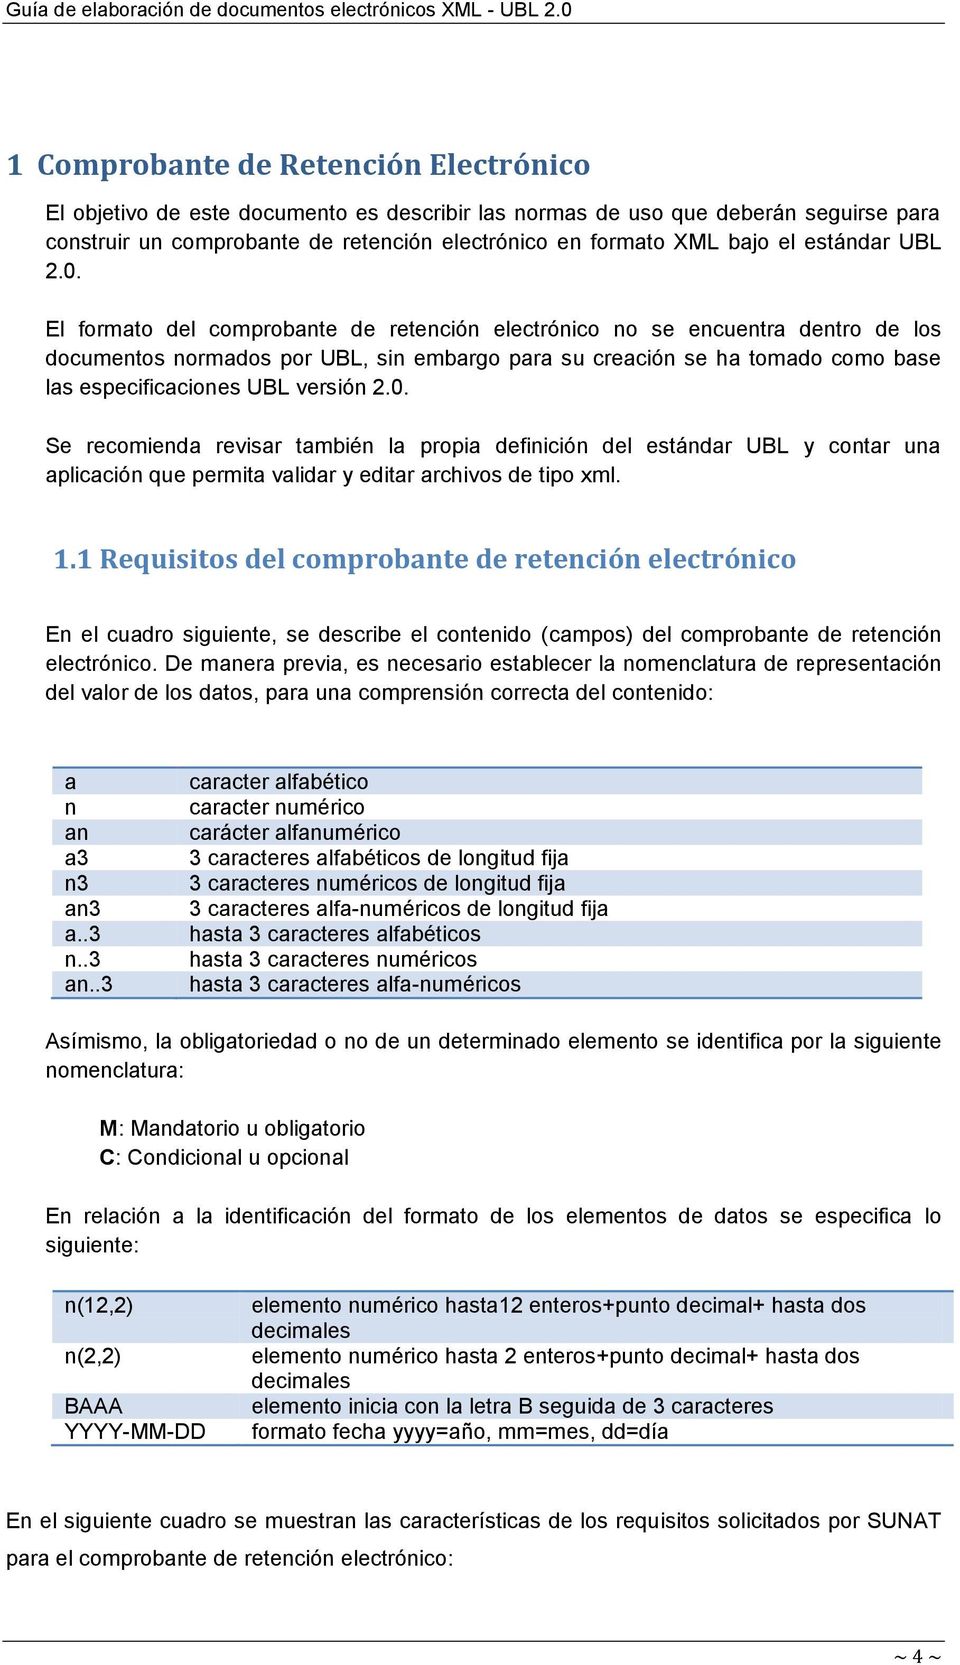 El formato del comprobante de retención electrónico no se encuentra dentro de los documentos normados por UBL, sin embargo para su creación se ha tomado como base las especificaciones UBL versión 2.0.